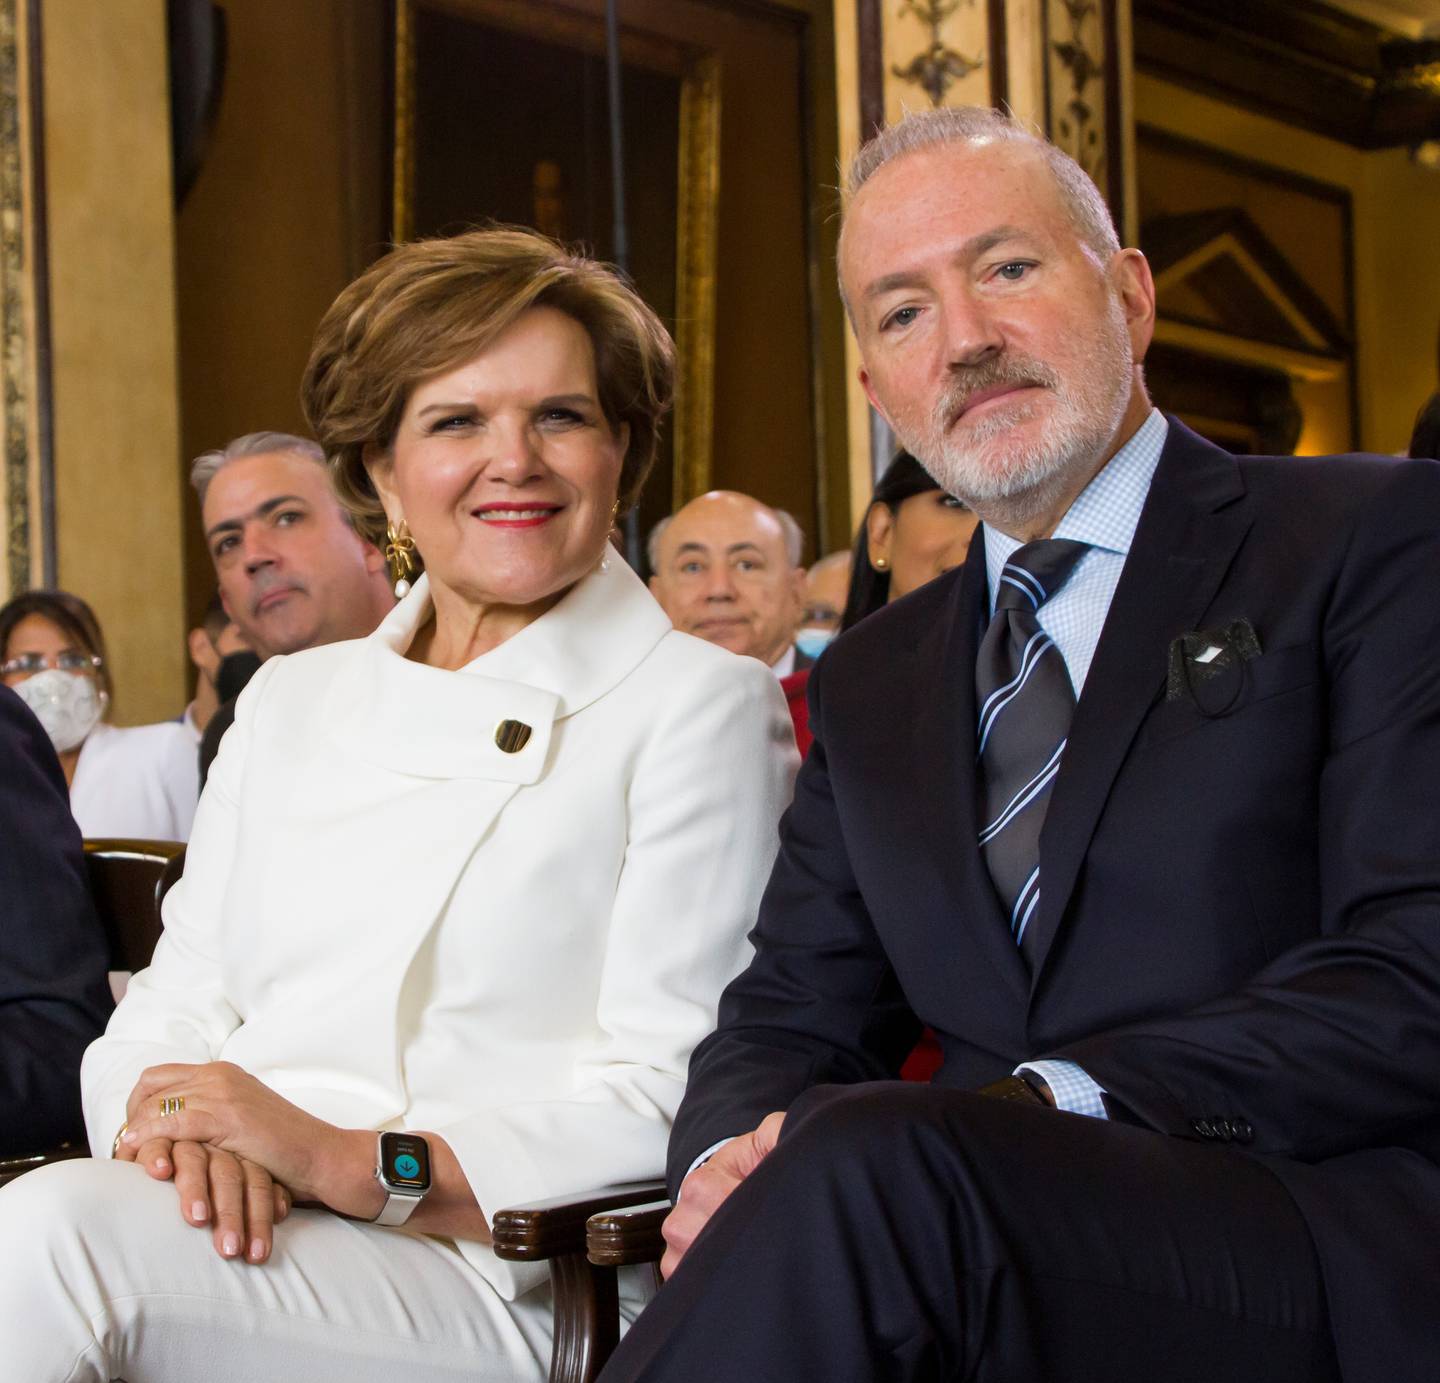 Rocío Salazar Arrarte, Vicepresidente Ejecutiva de Banco Bolivariano y Vicente Vallarino Marcos, Presidente Ejecutivo de Banco Bolivariano.